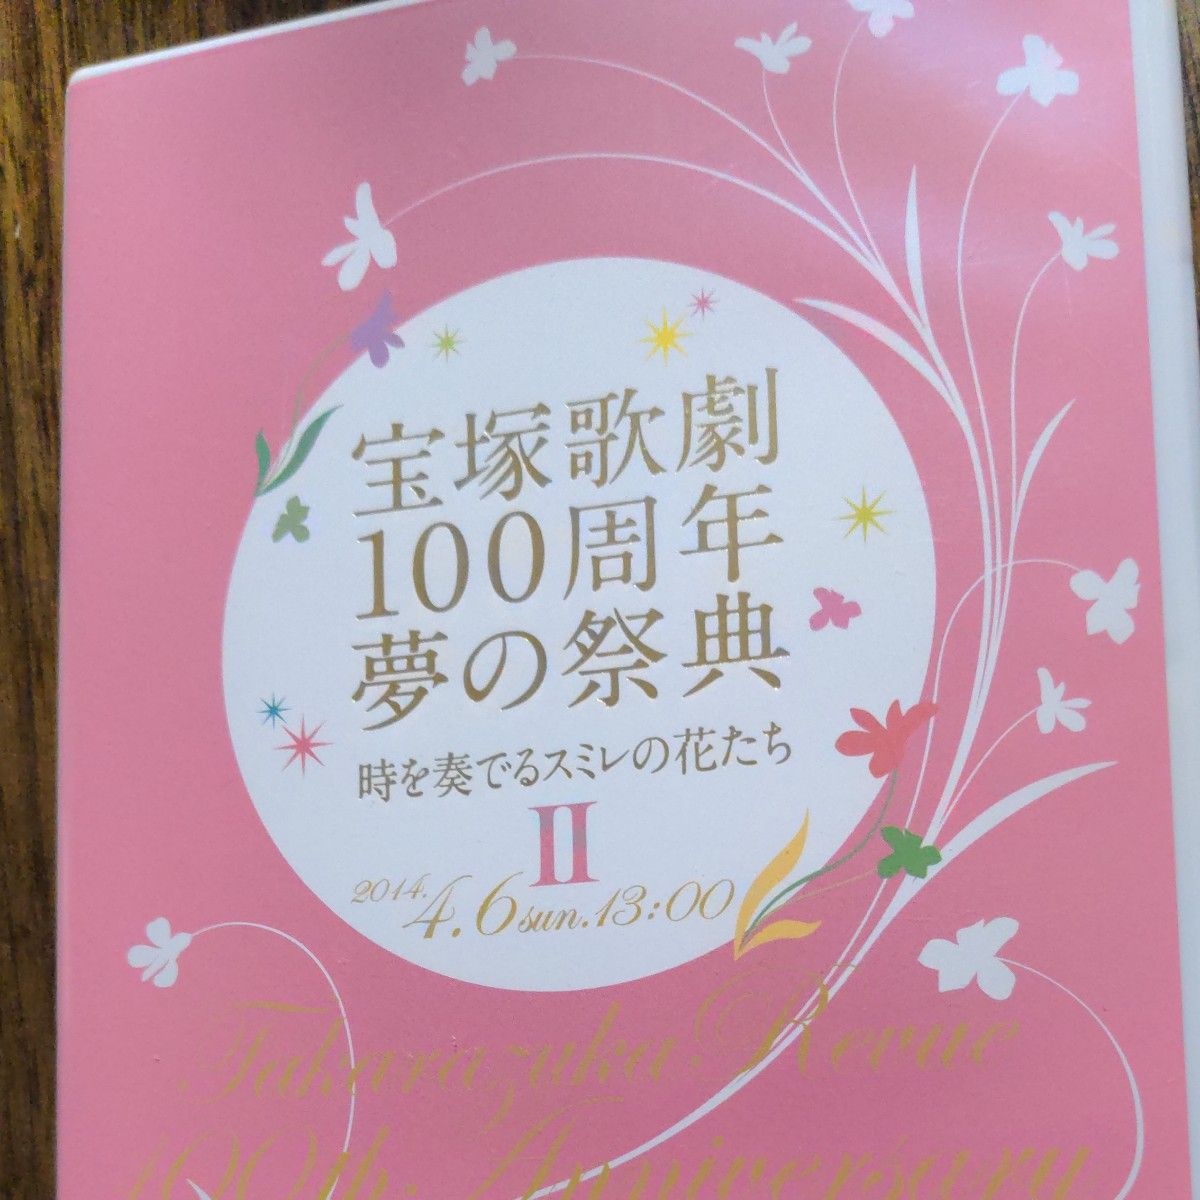 宝塚歌劇100周年 夢の祭典『時を奏でるスミレの花たち』 Ⅱ　DVD